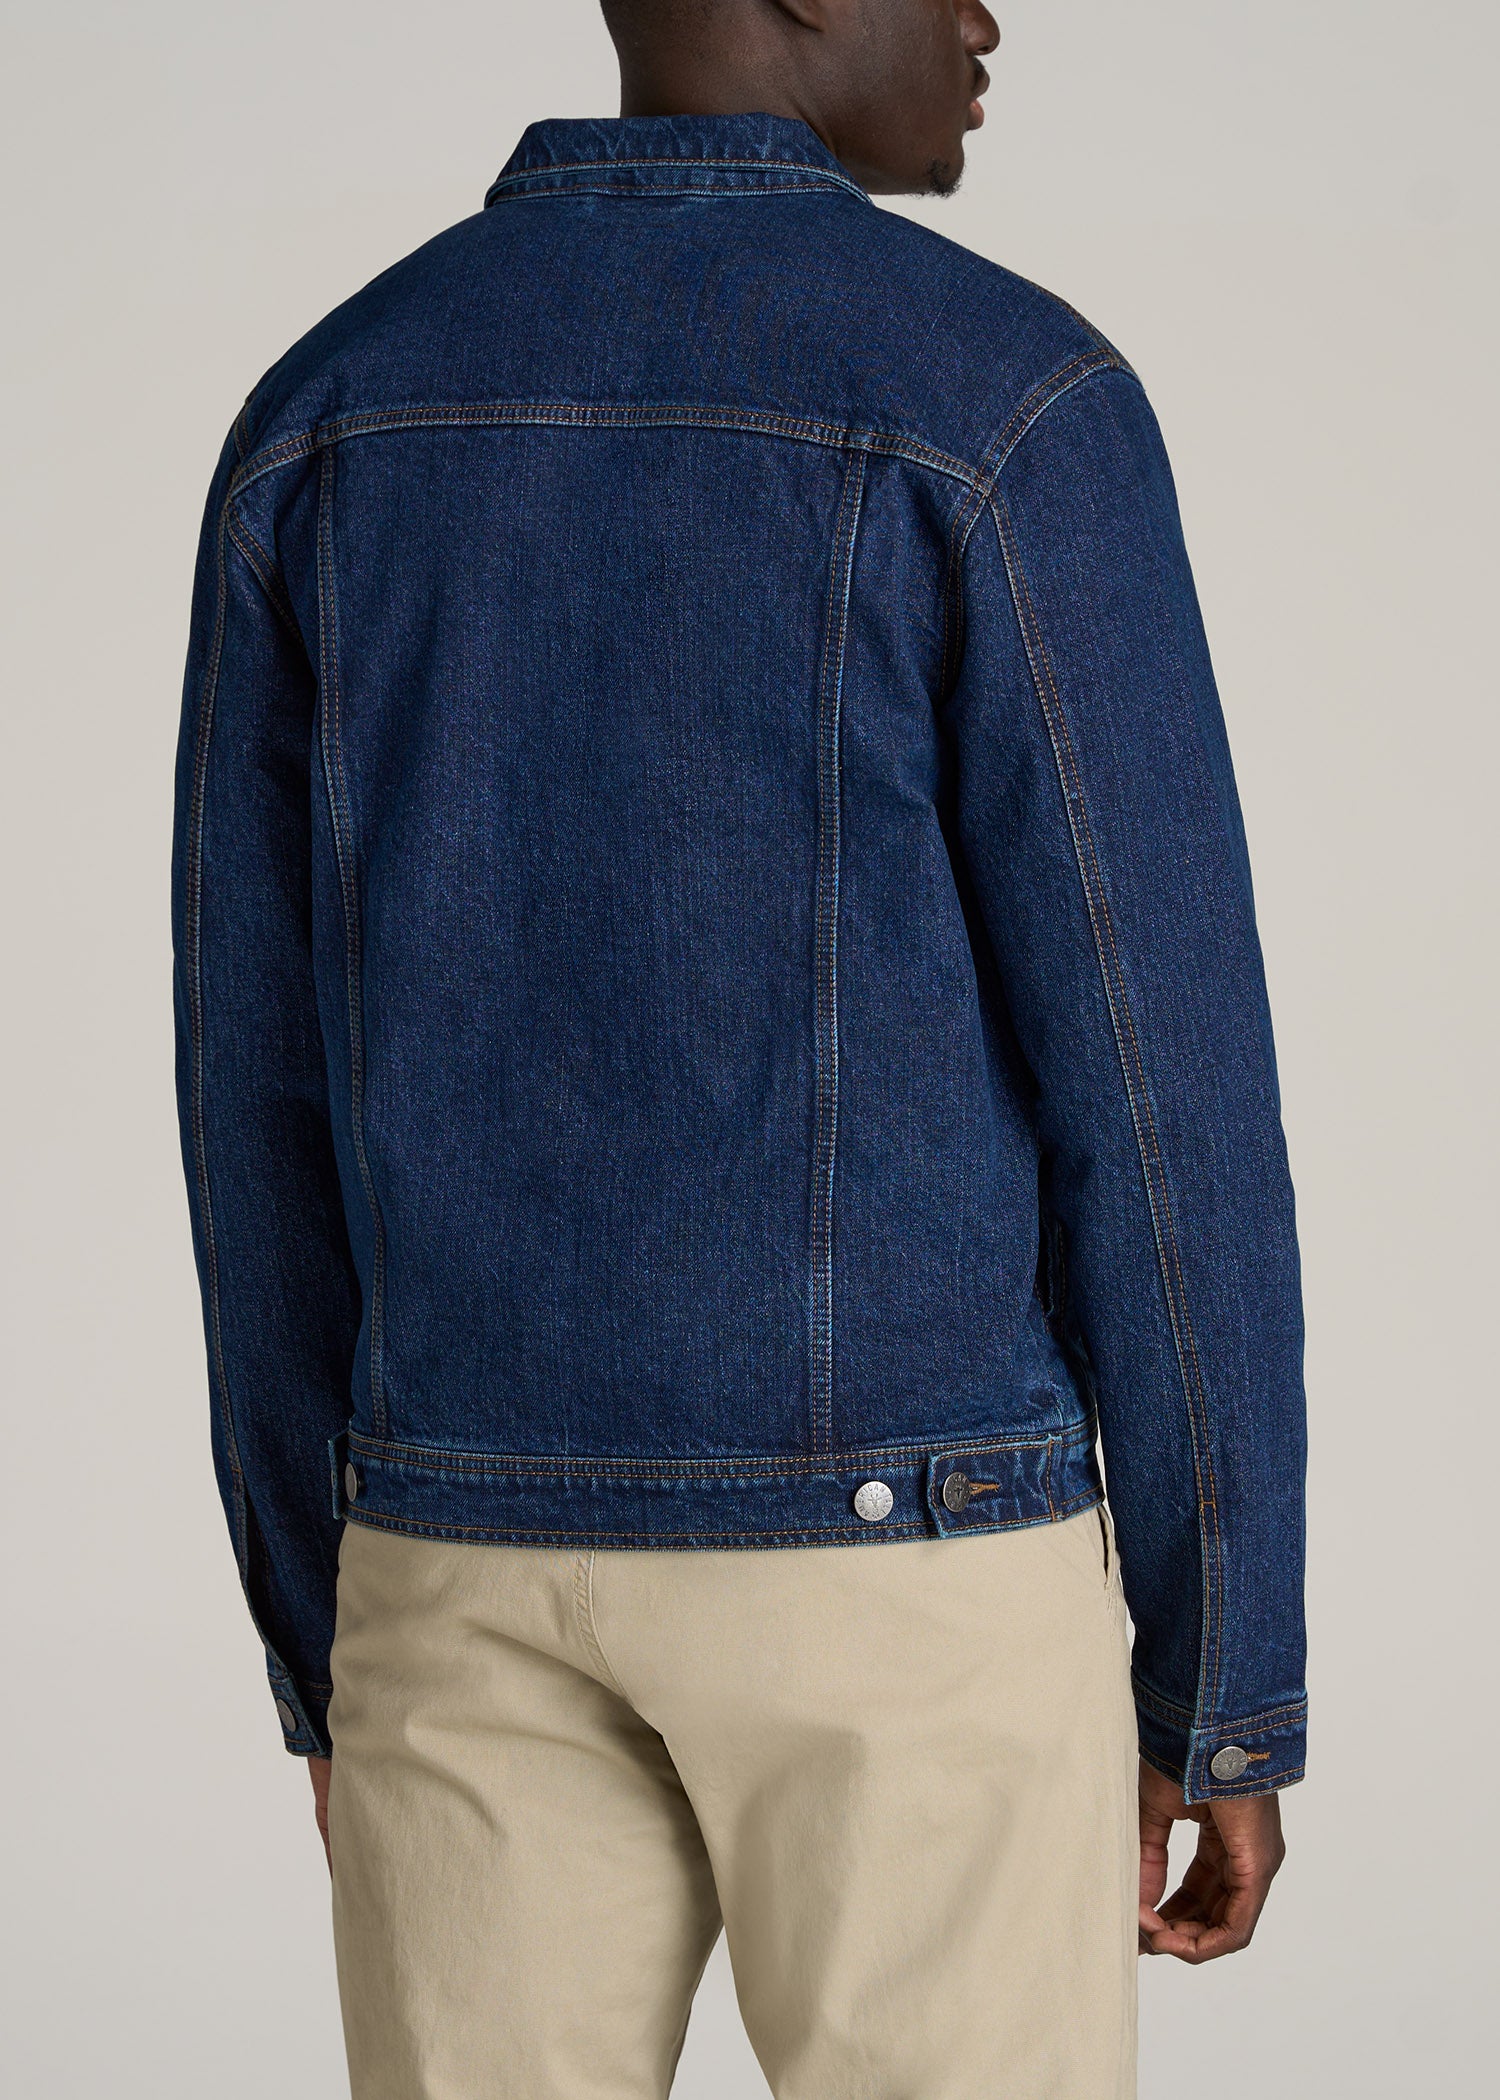 Men's Tall Denim Jacket in Dark Blue M / Tall / Dark Blue